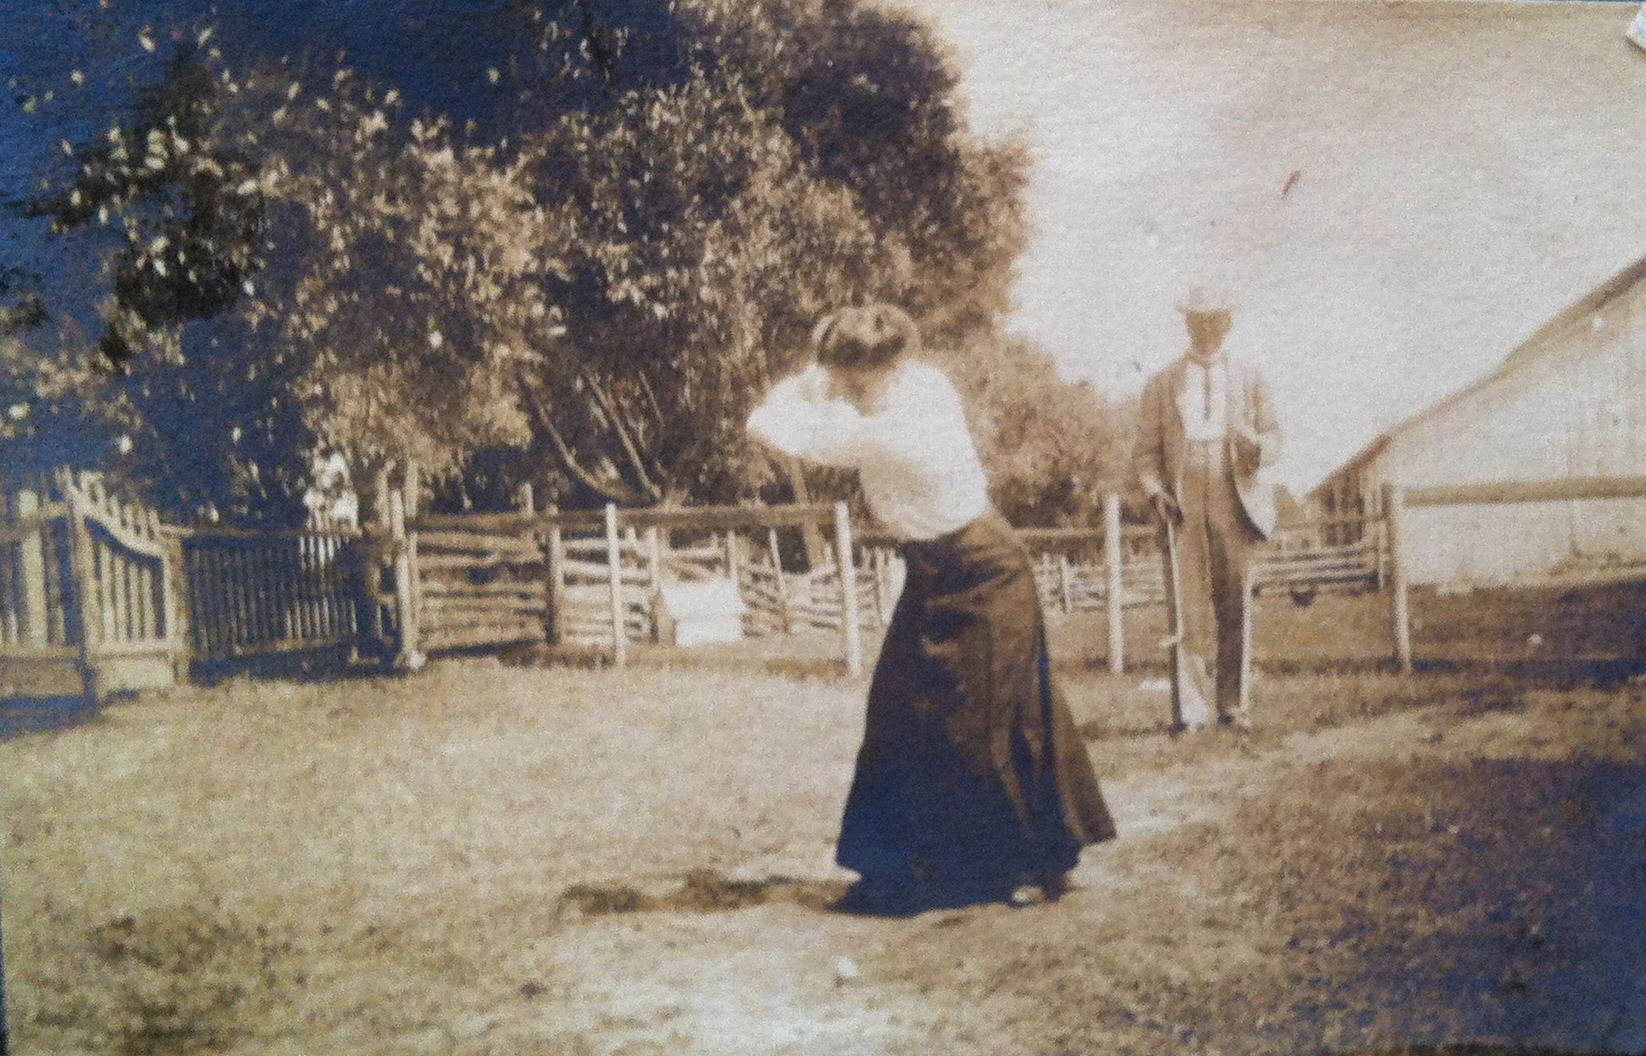 Une femme s’apprête à frapper une balle de golf pendant qu’un homme attend, en retrait.